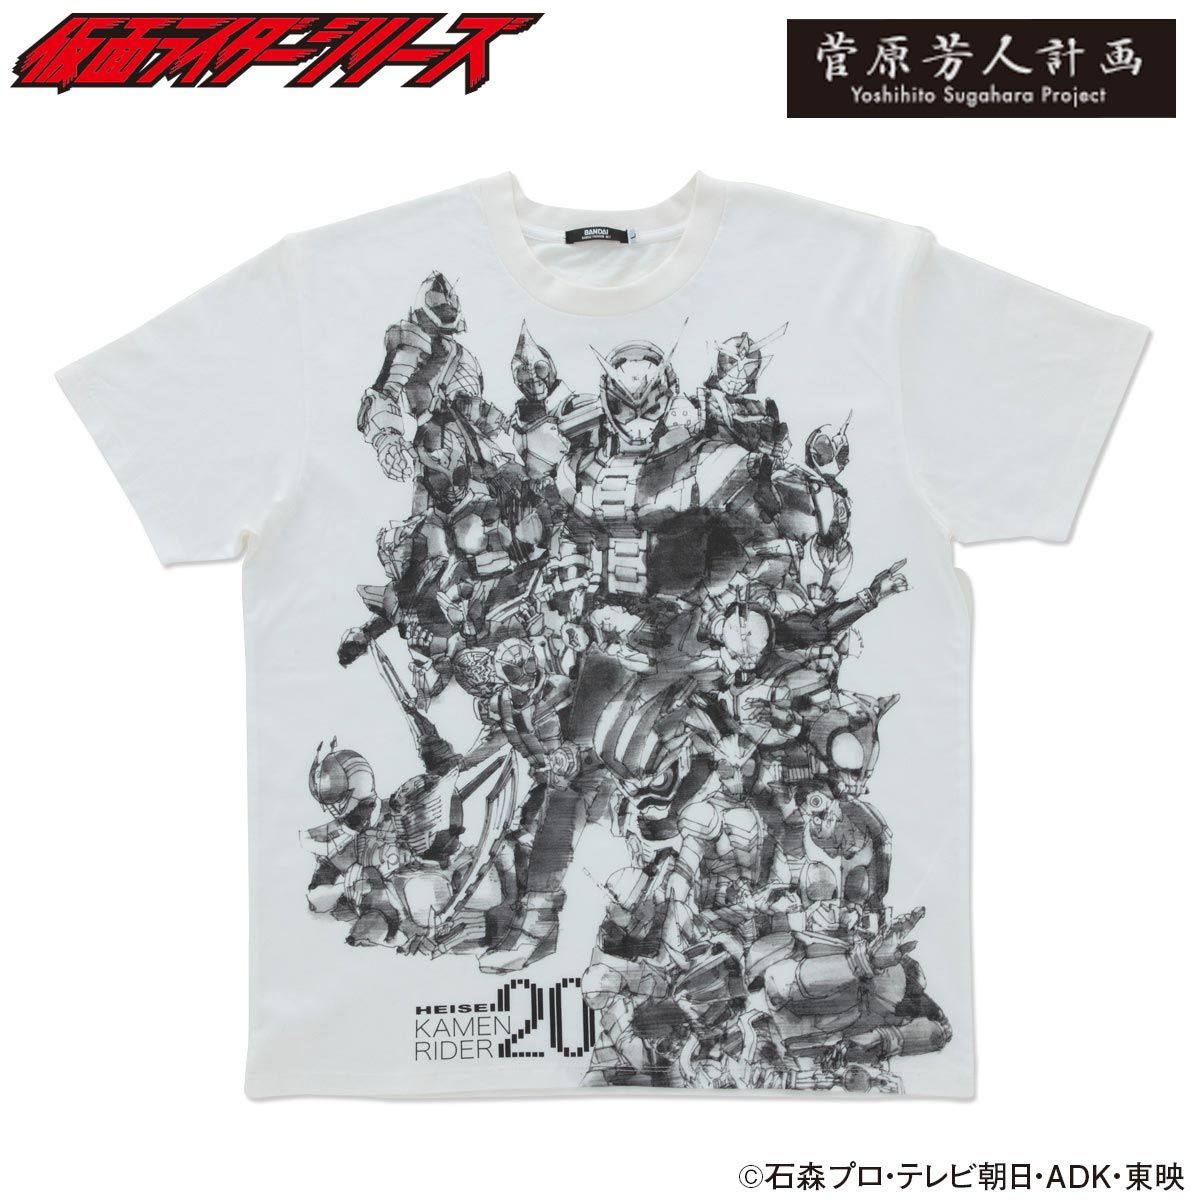 KAMEN RIDER ZI-O & HEISEI RIDER 20th anniversary T-shirt (designed by YOSHIHITO SUGAWARA)